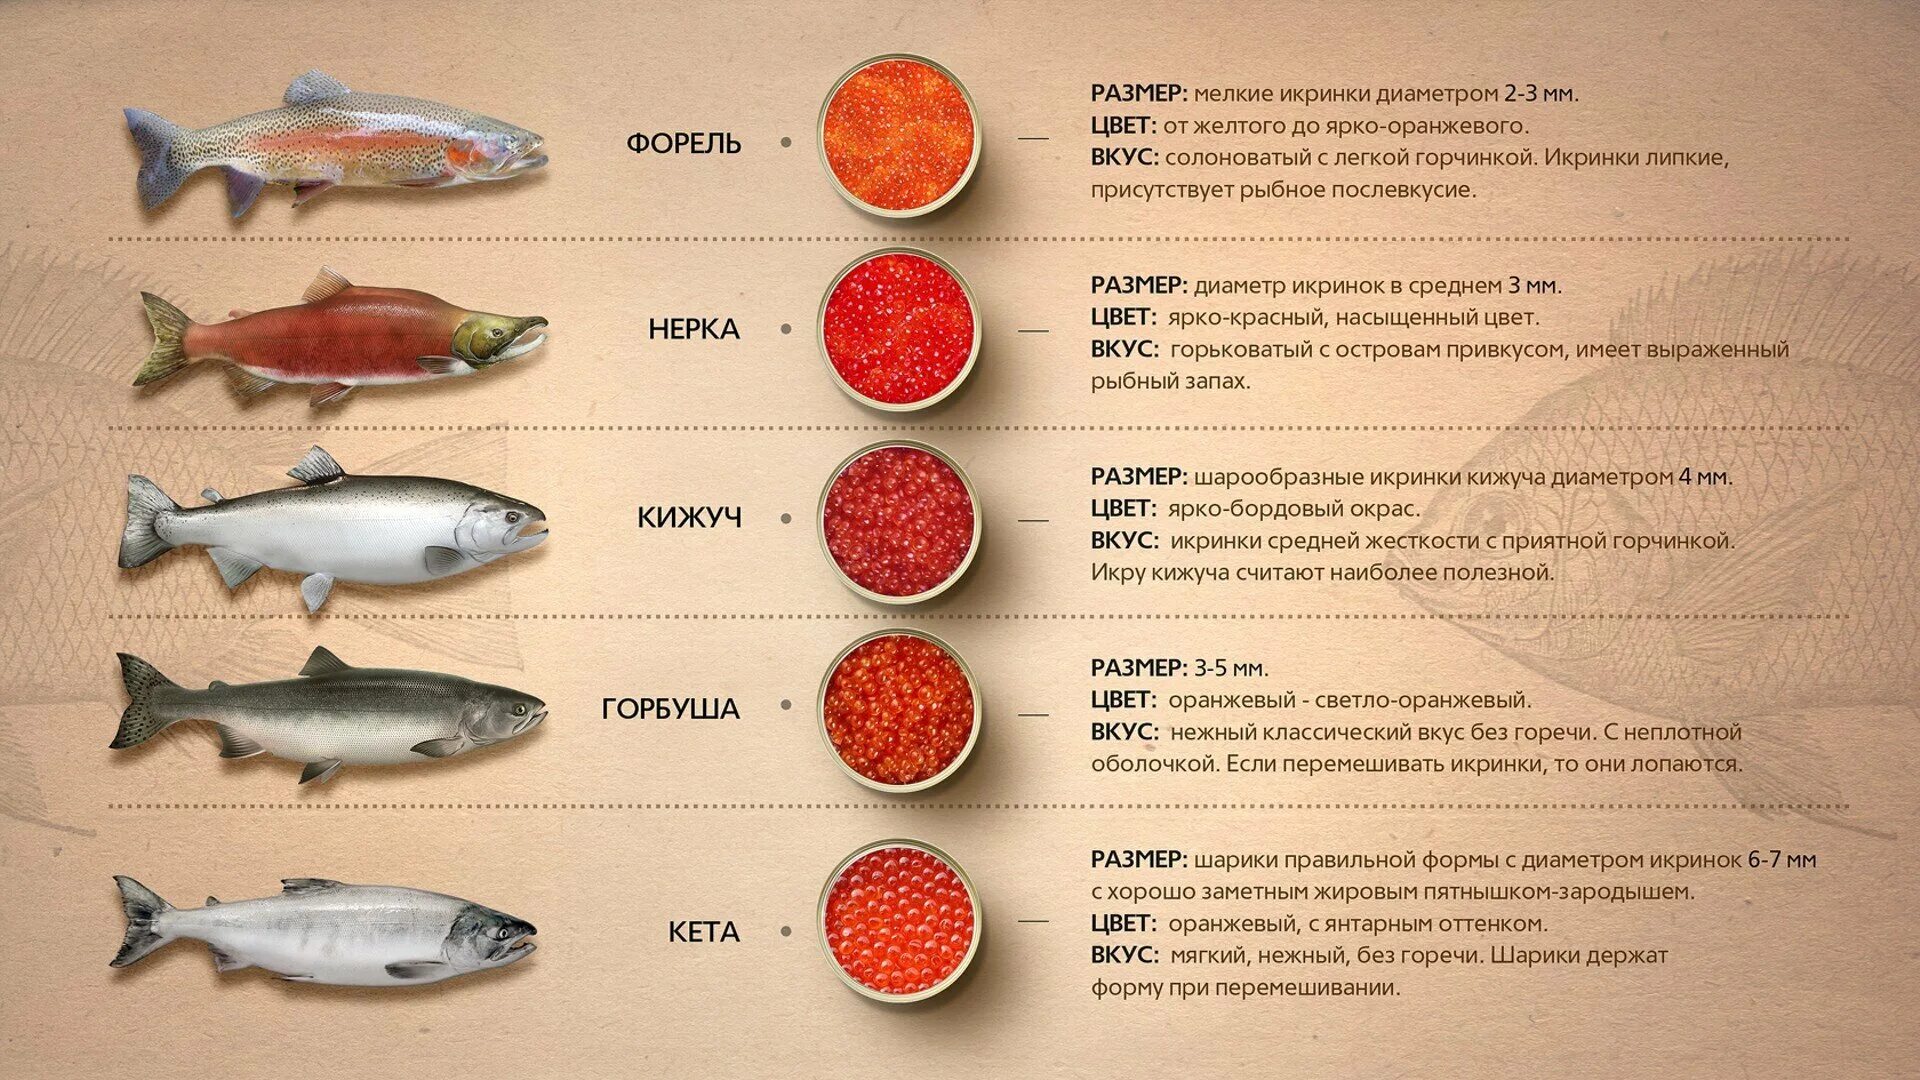 Лососевая рыба сканворд 5. Рыбы семейства лососевых названия. Красная рыба виды названия. Размер икры лососевых рыб. Диаметр икринок лососевых рыб.